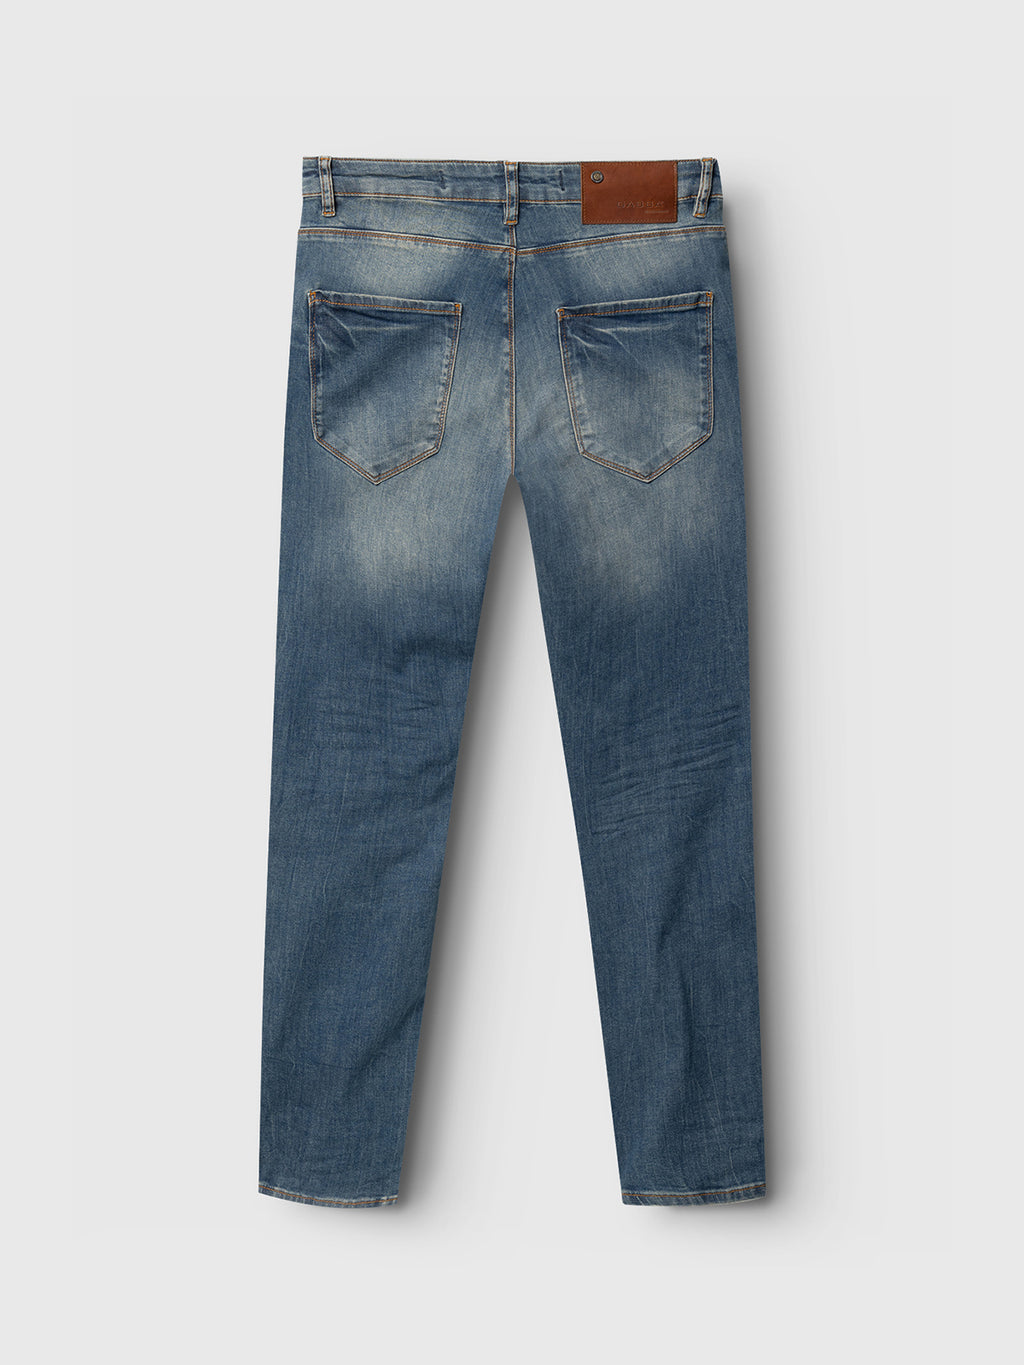 Rey 44617 Jeans - Denim wash